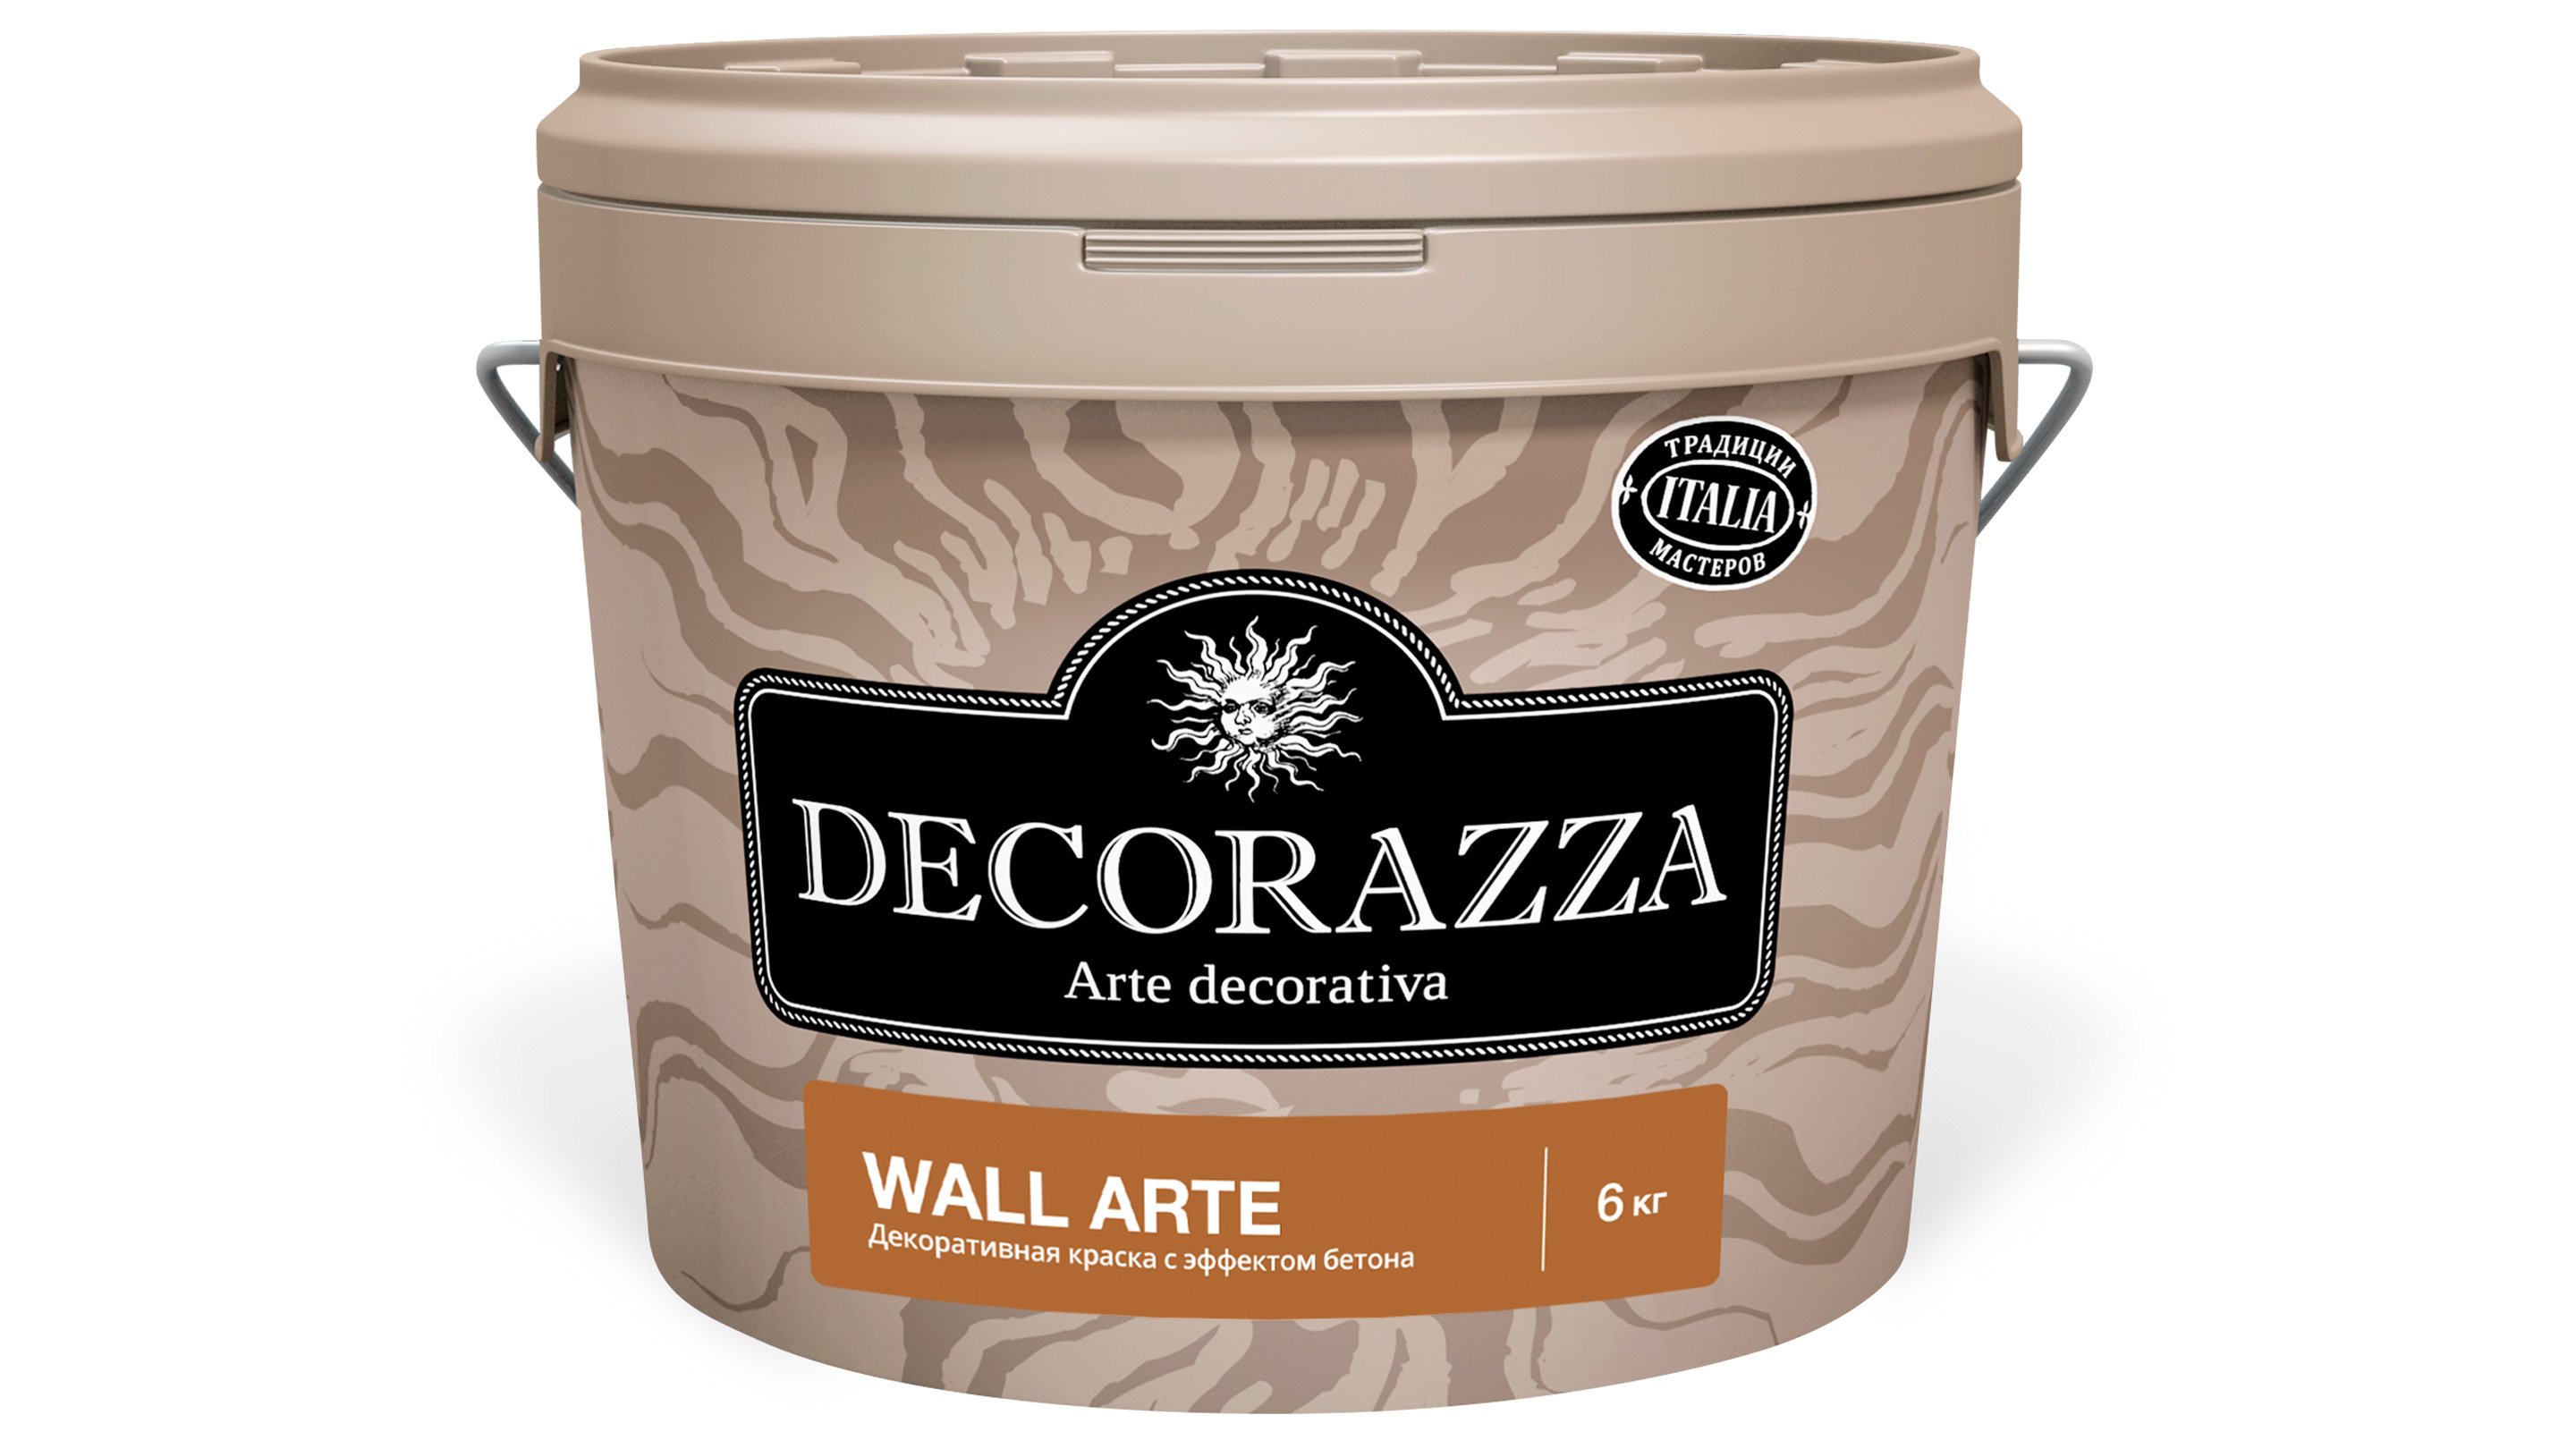 Декоративная штукатурка Decorazza Wall Arte (с эффектом гладкого бетона) 6 кг декоративная металлизированная краска decorazza